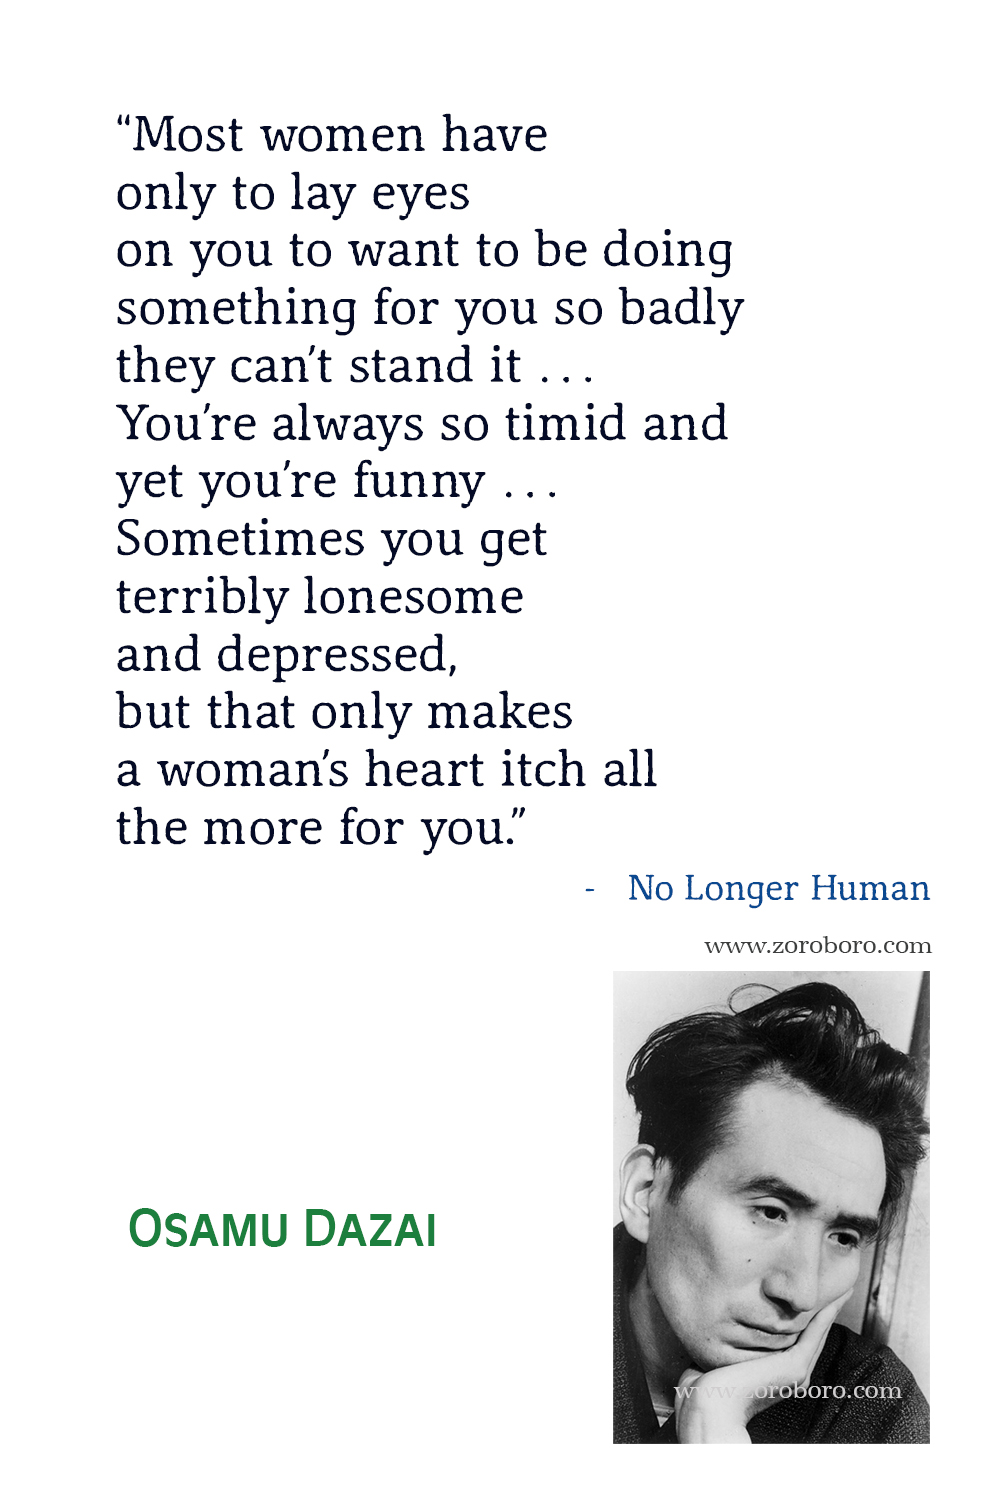 Osamu Dazai Quotes, Osamu Dazai No Longer Human Quotes, Osamu Dazai Books Quotes, No Longer Human Quotes by Osamu Dazai, Japanese novel by Osamu Dazai.